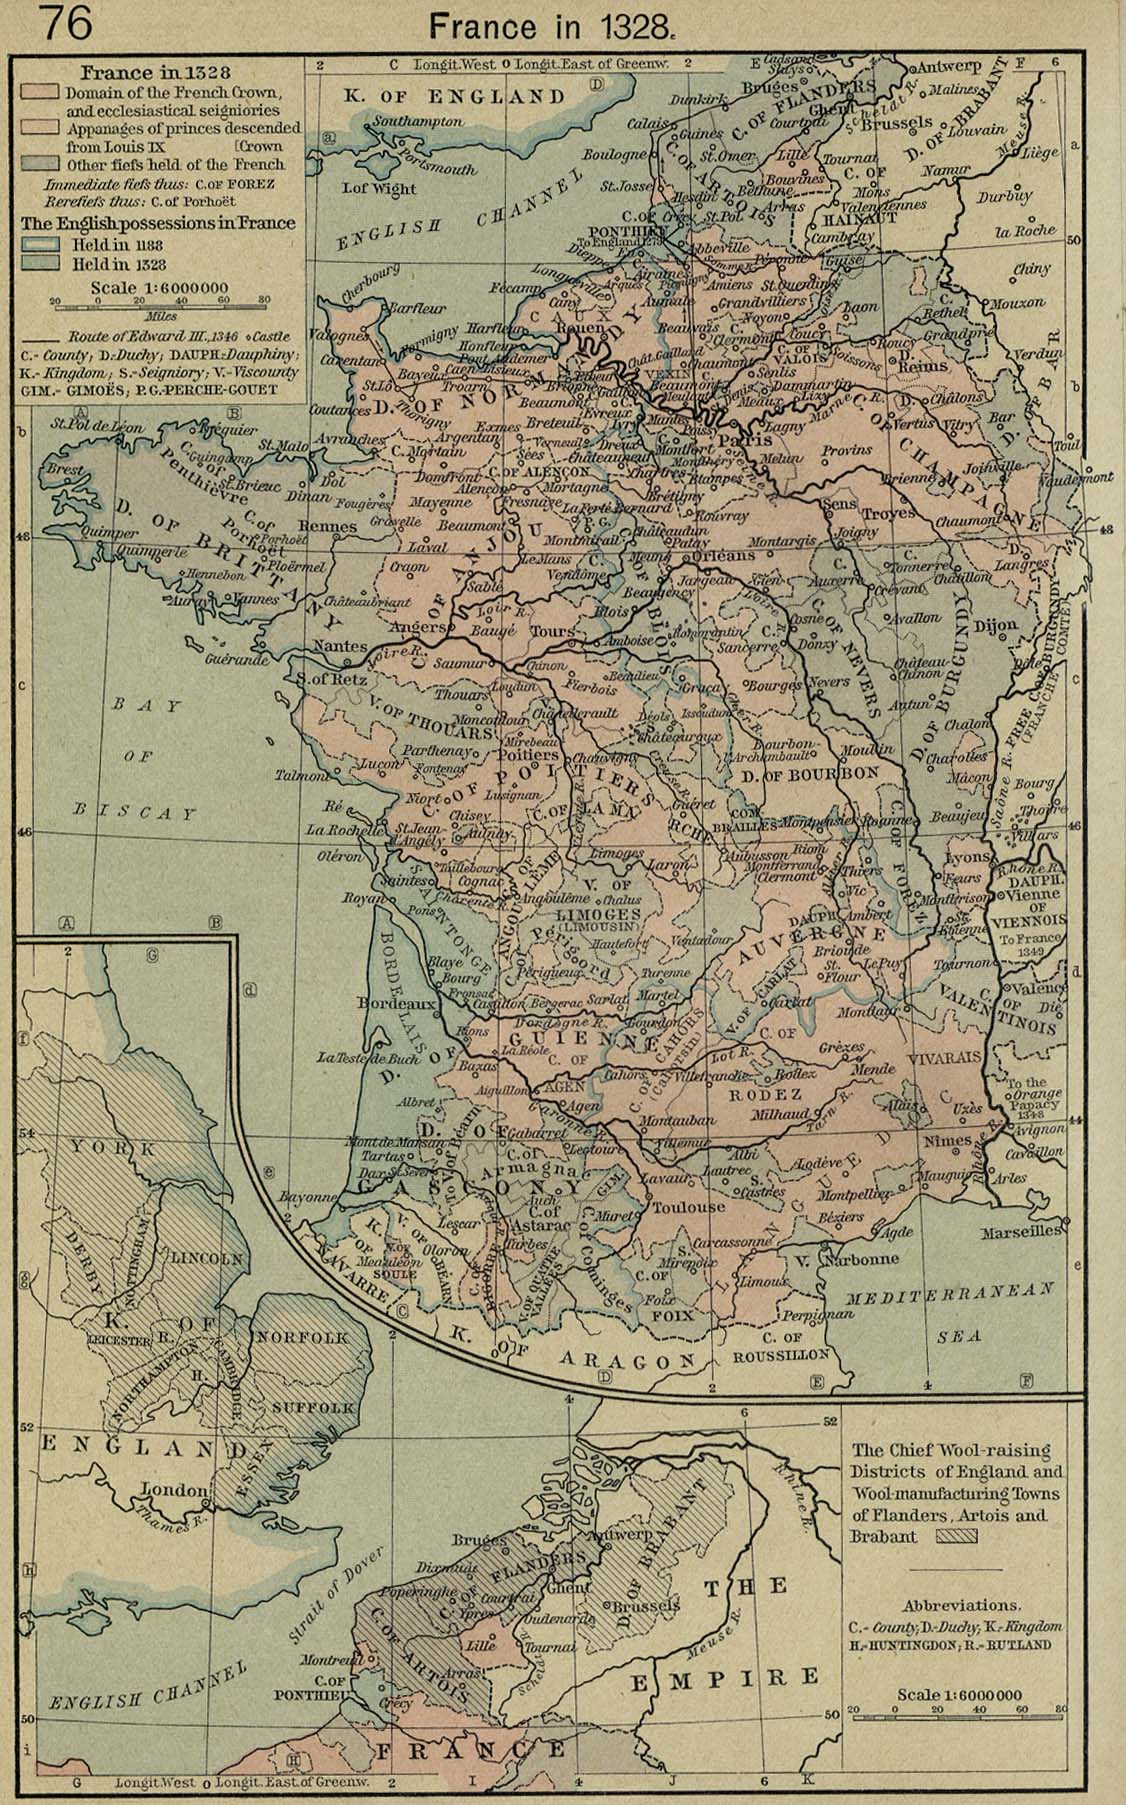 France c. 1328 C. E.